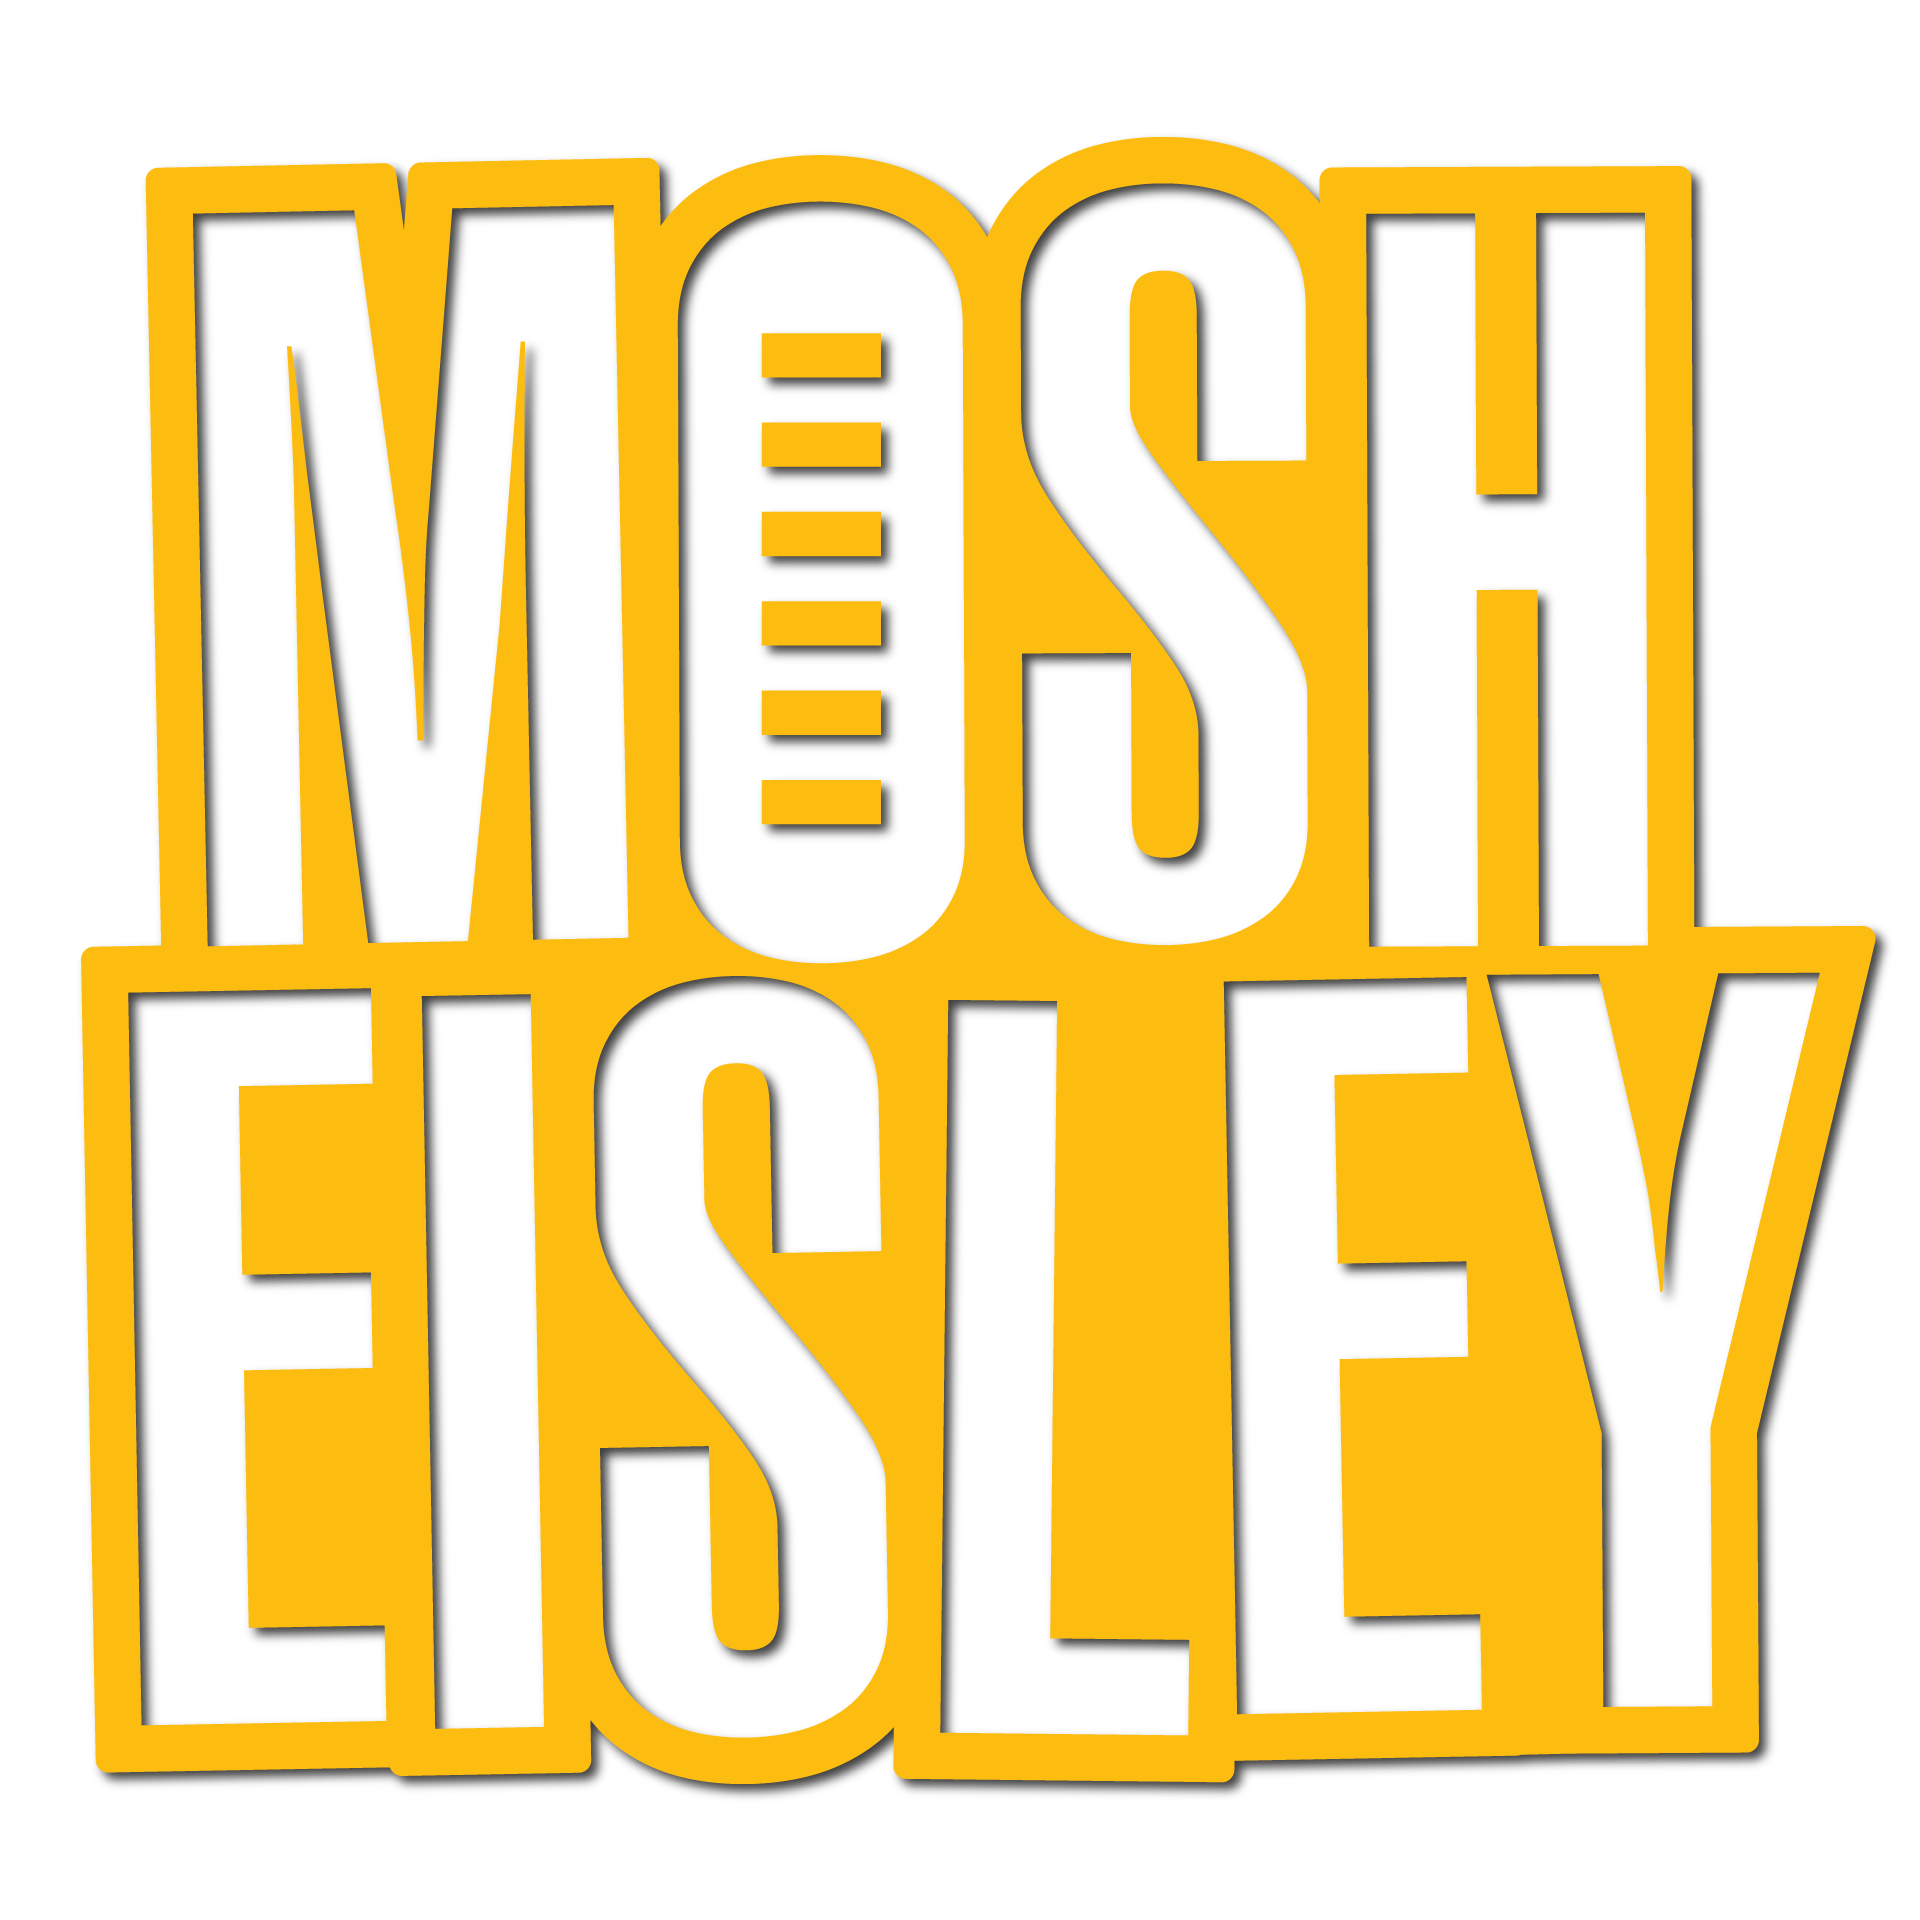 MOSH EISLEY